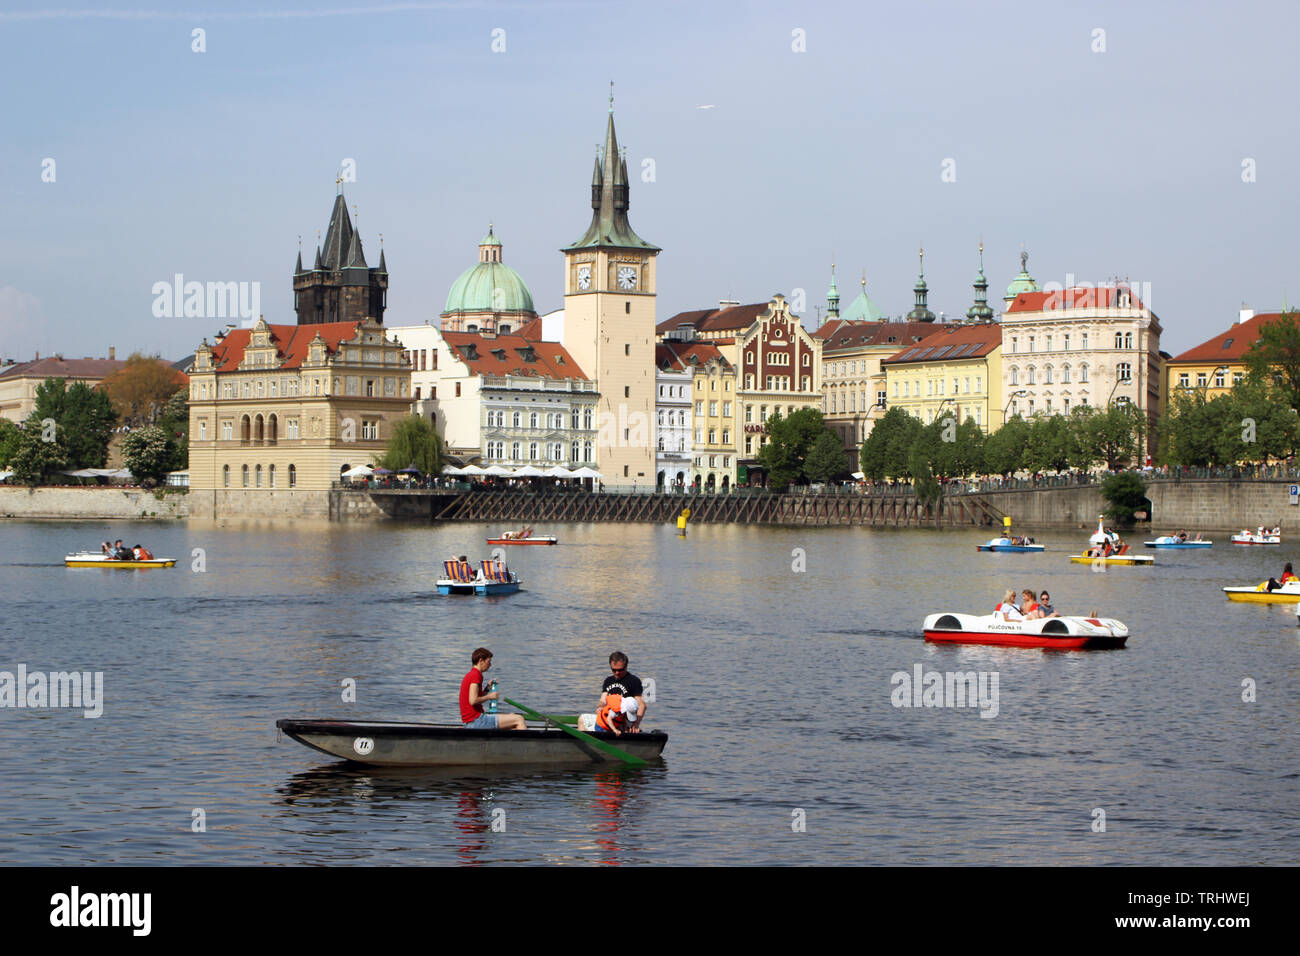 Des bateaux sur la rivière Vltava, vieille ville sur l'arrière-plan, vue de Střelecký ostrov à Prague, République Tchèque Banque D'Images